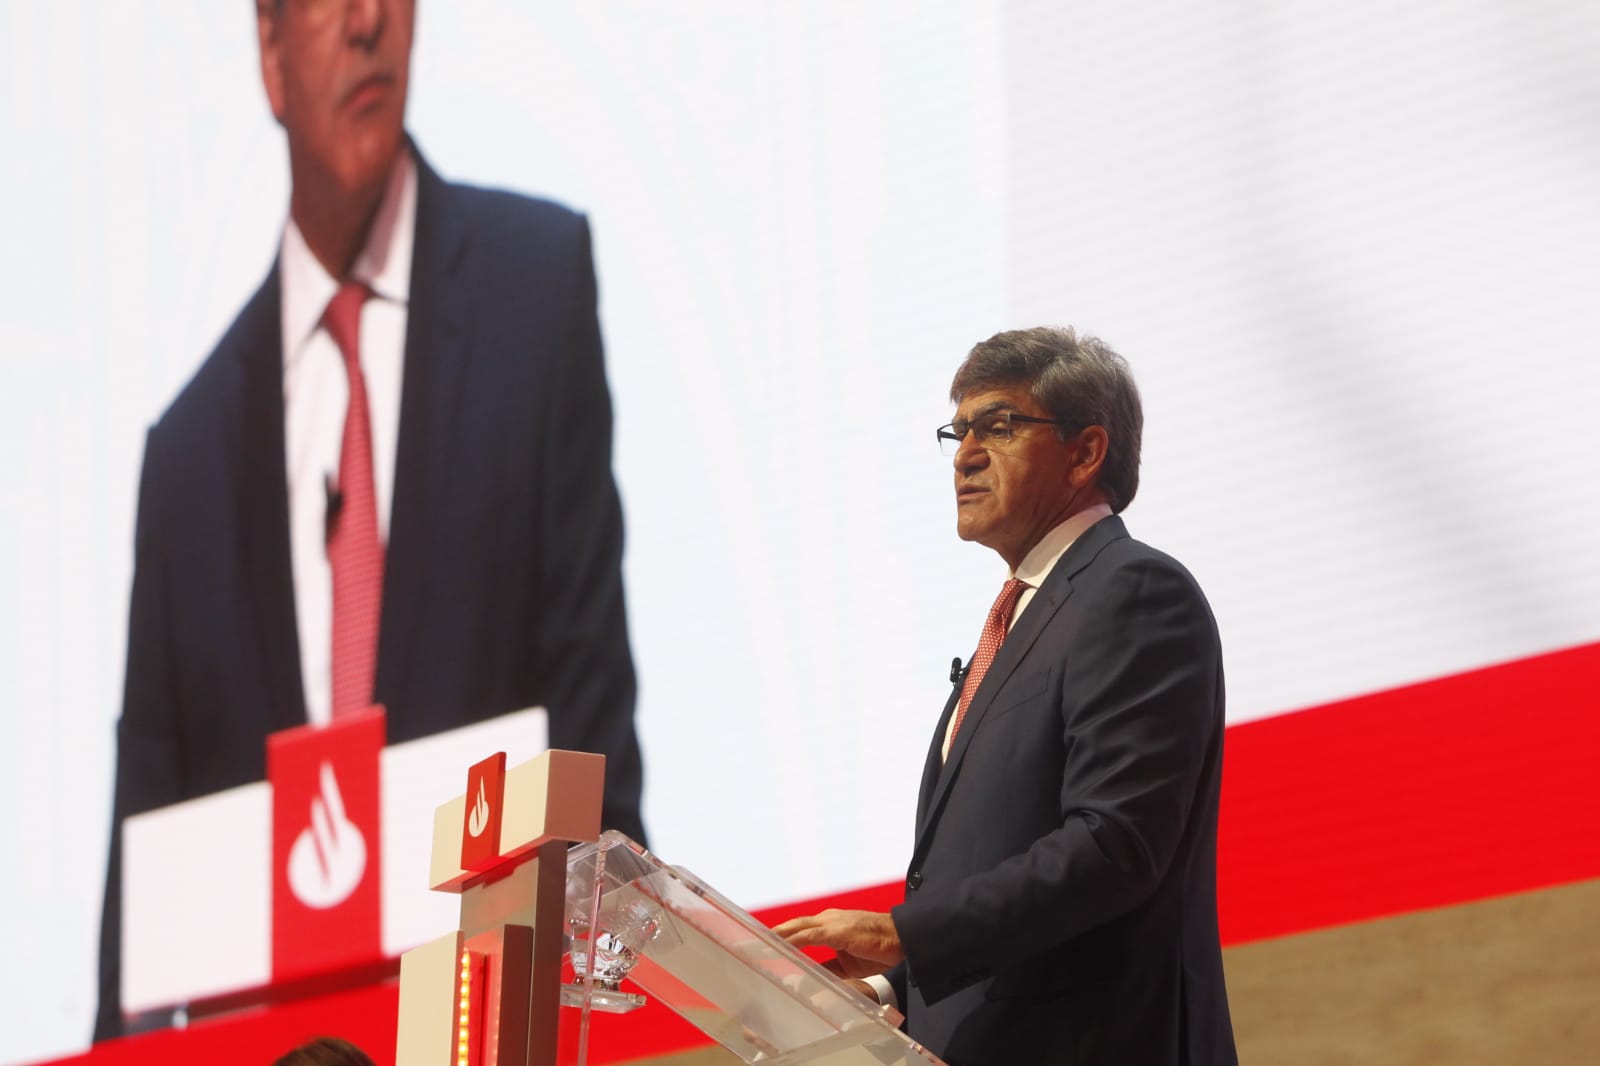 La junta del Banco Santander reúne este viernes a cerca de 2.500 accionistas ejecutivos y empleados de la entidad en el Palacio de Exposiciones de Santander. La junta ha comenzado a las 9.30 horas, presidida por Ana Botín.